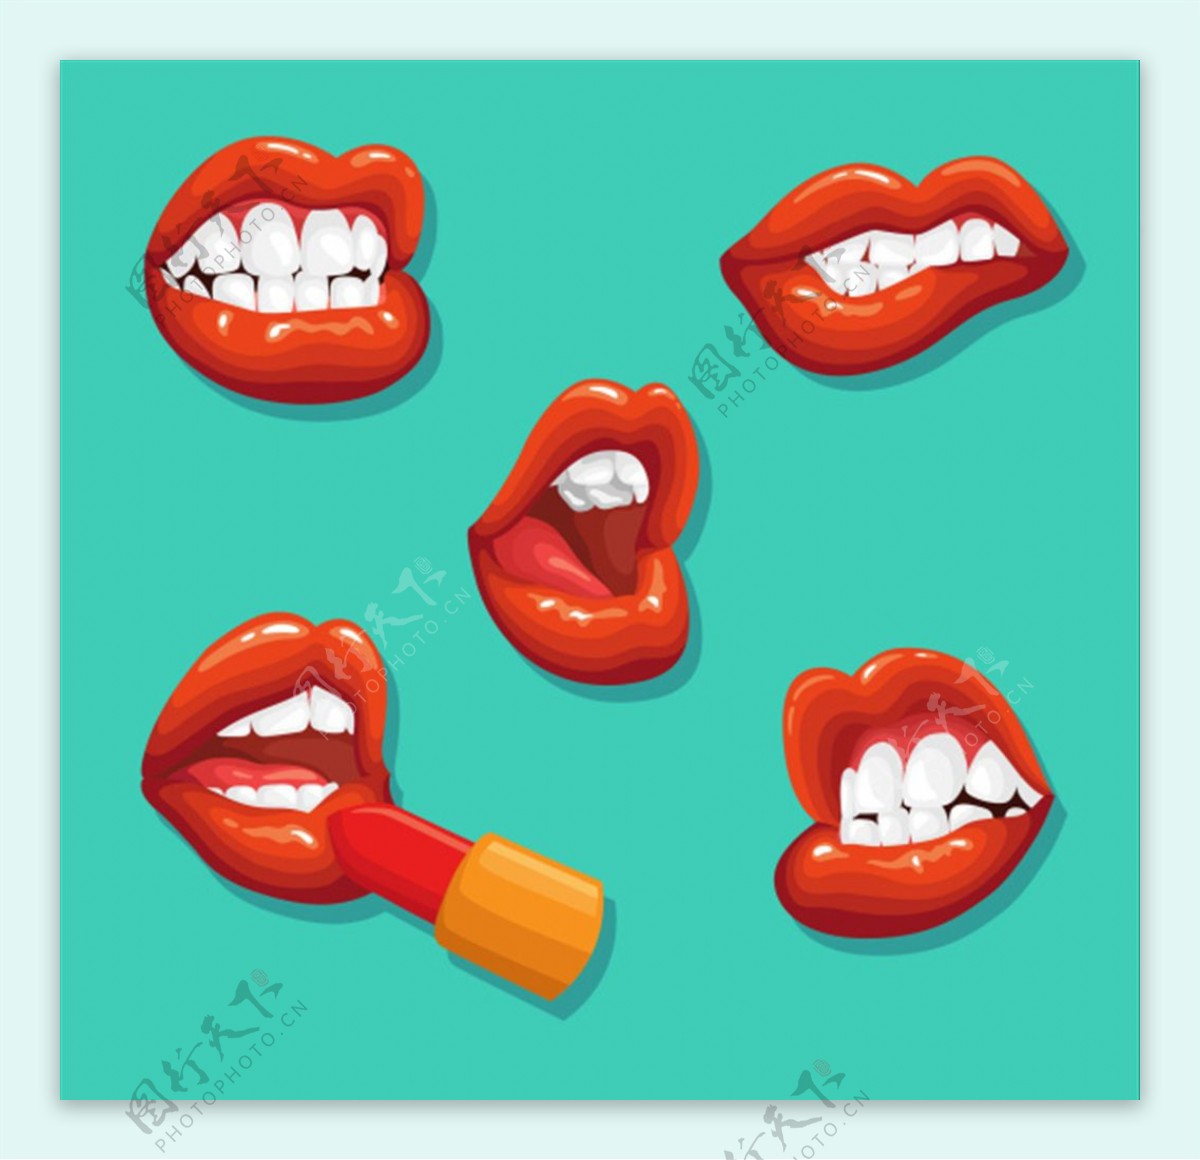 超过 70000 张关于“大嘴巴”和“自然”的免费图片 - Pixabay